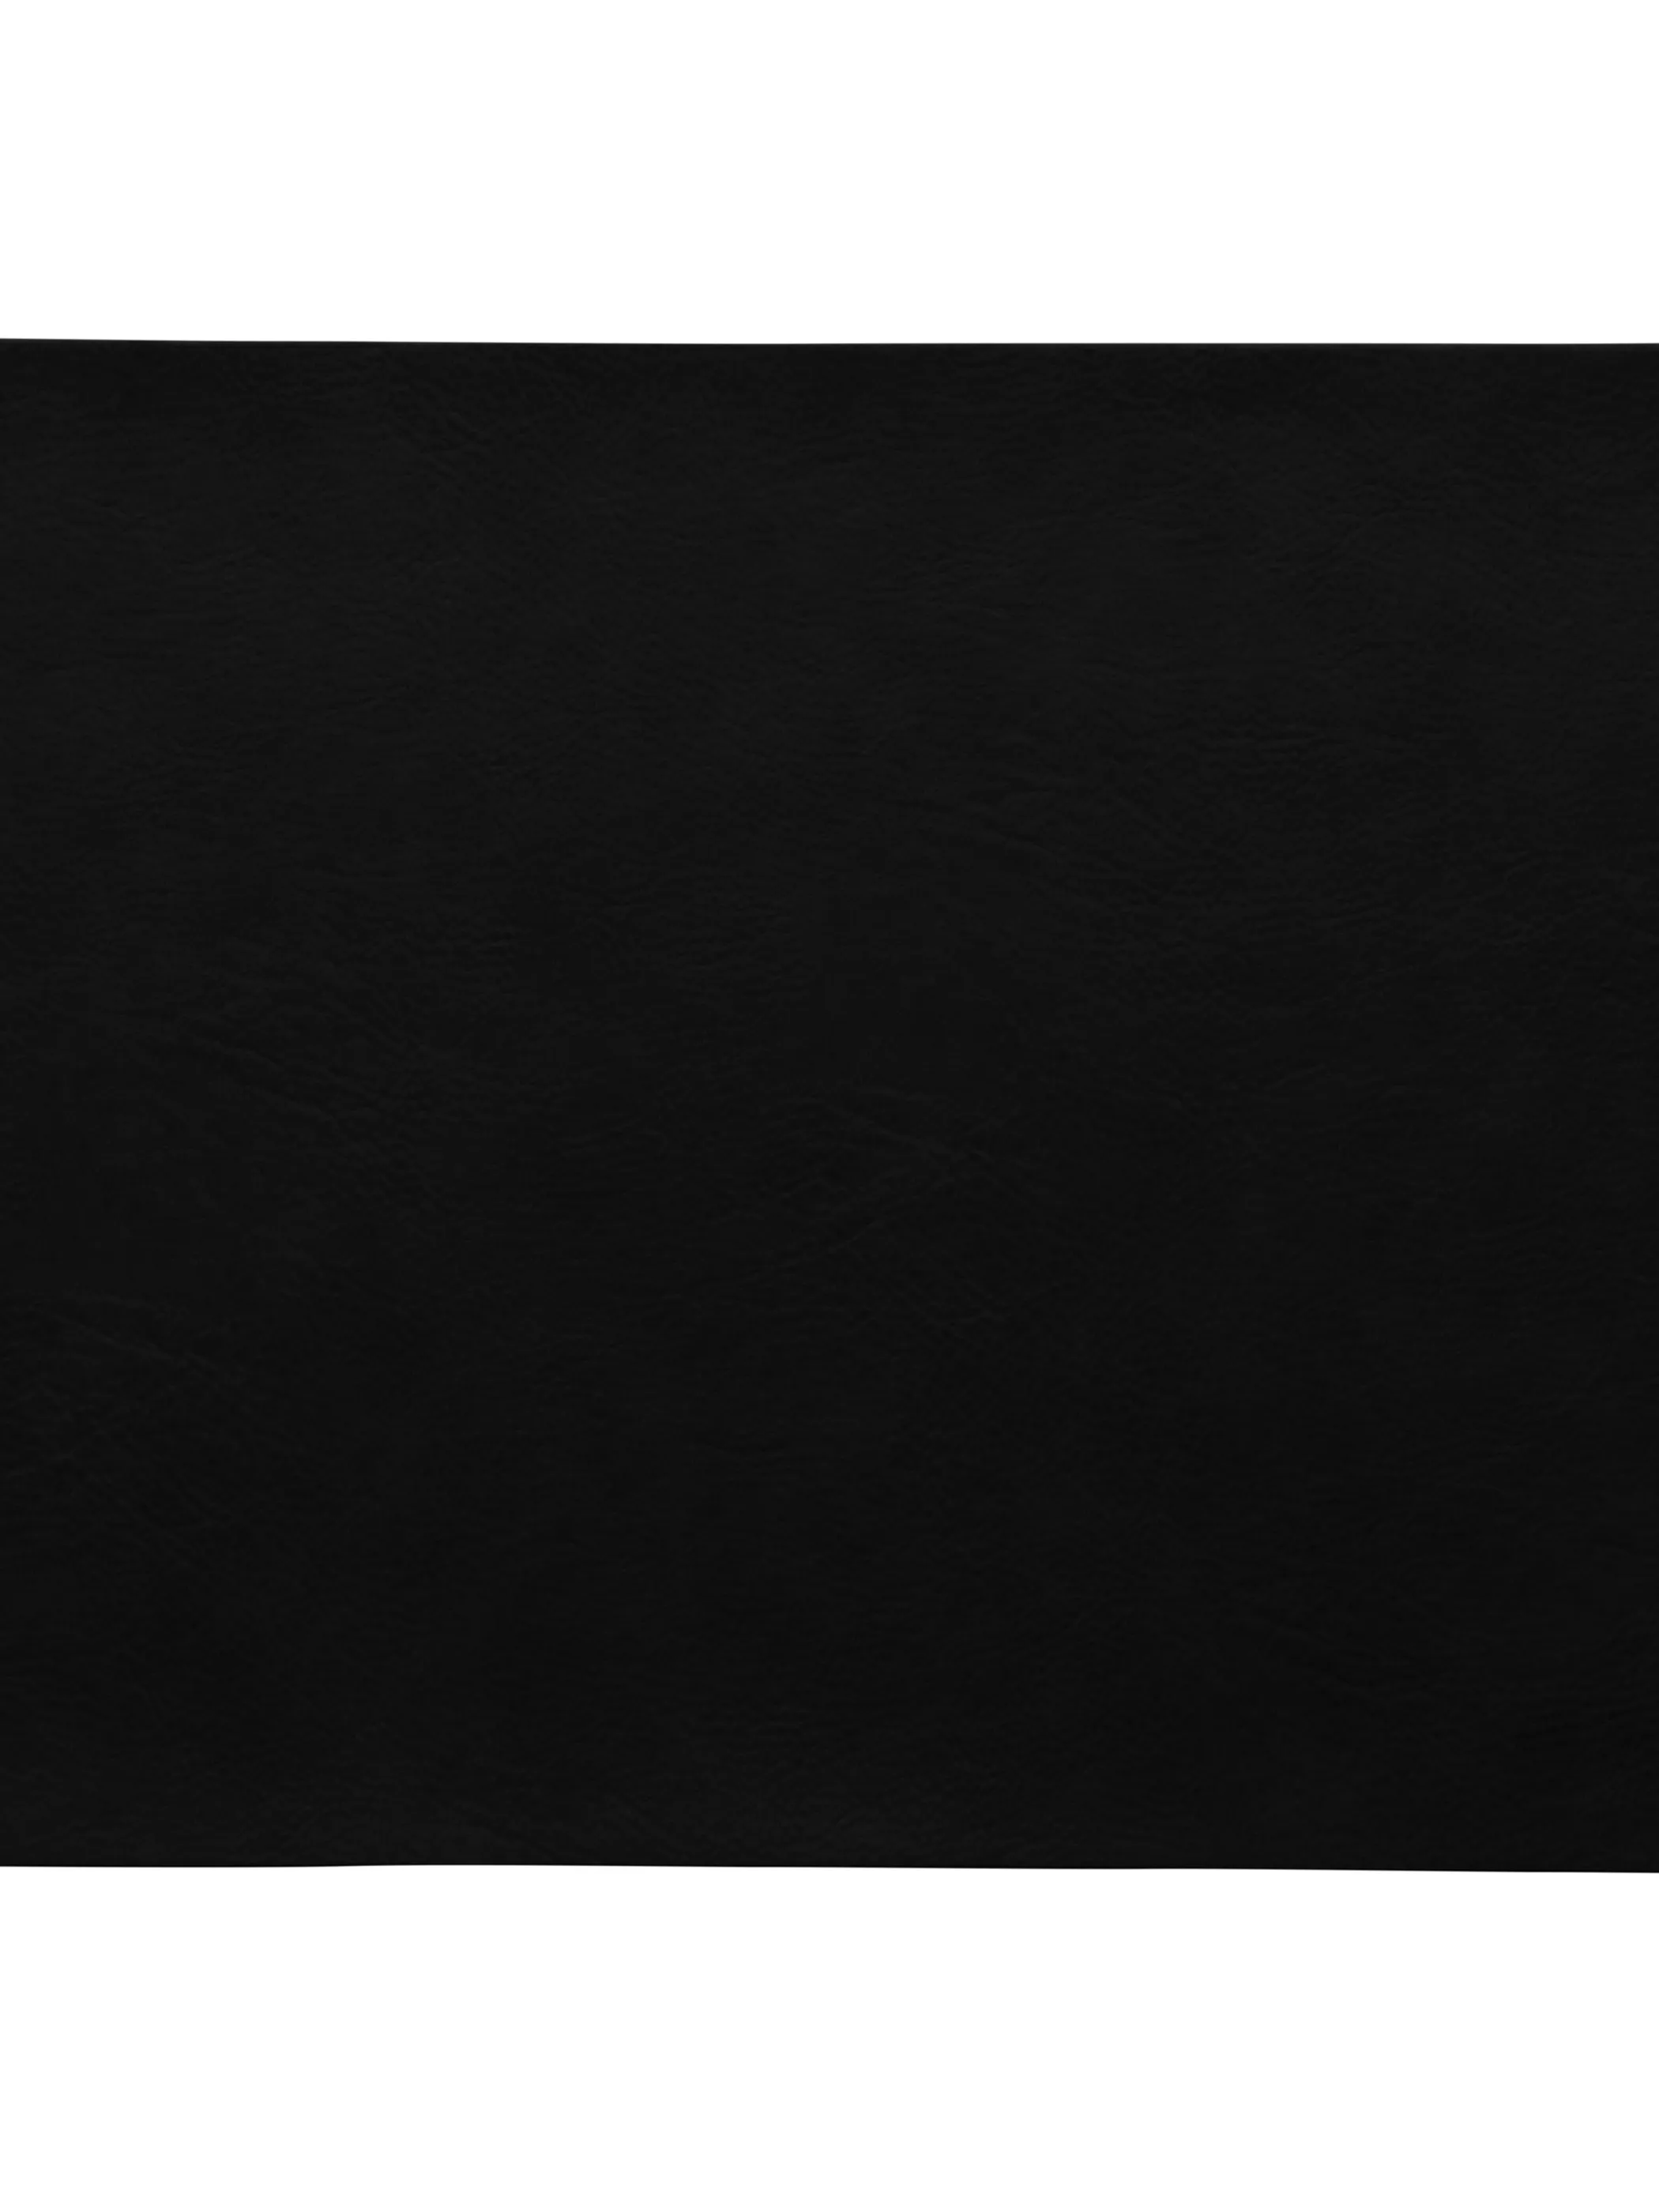 ASA Tischset schwarz Schwarz 838661 SCHWARZ 1